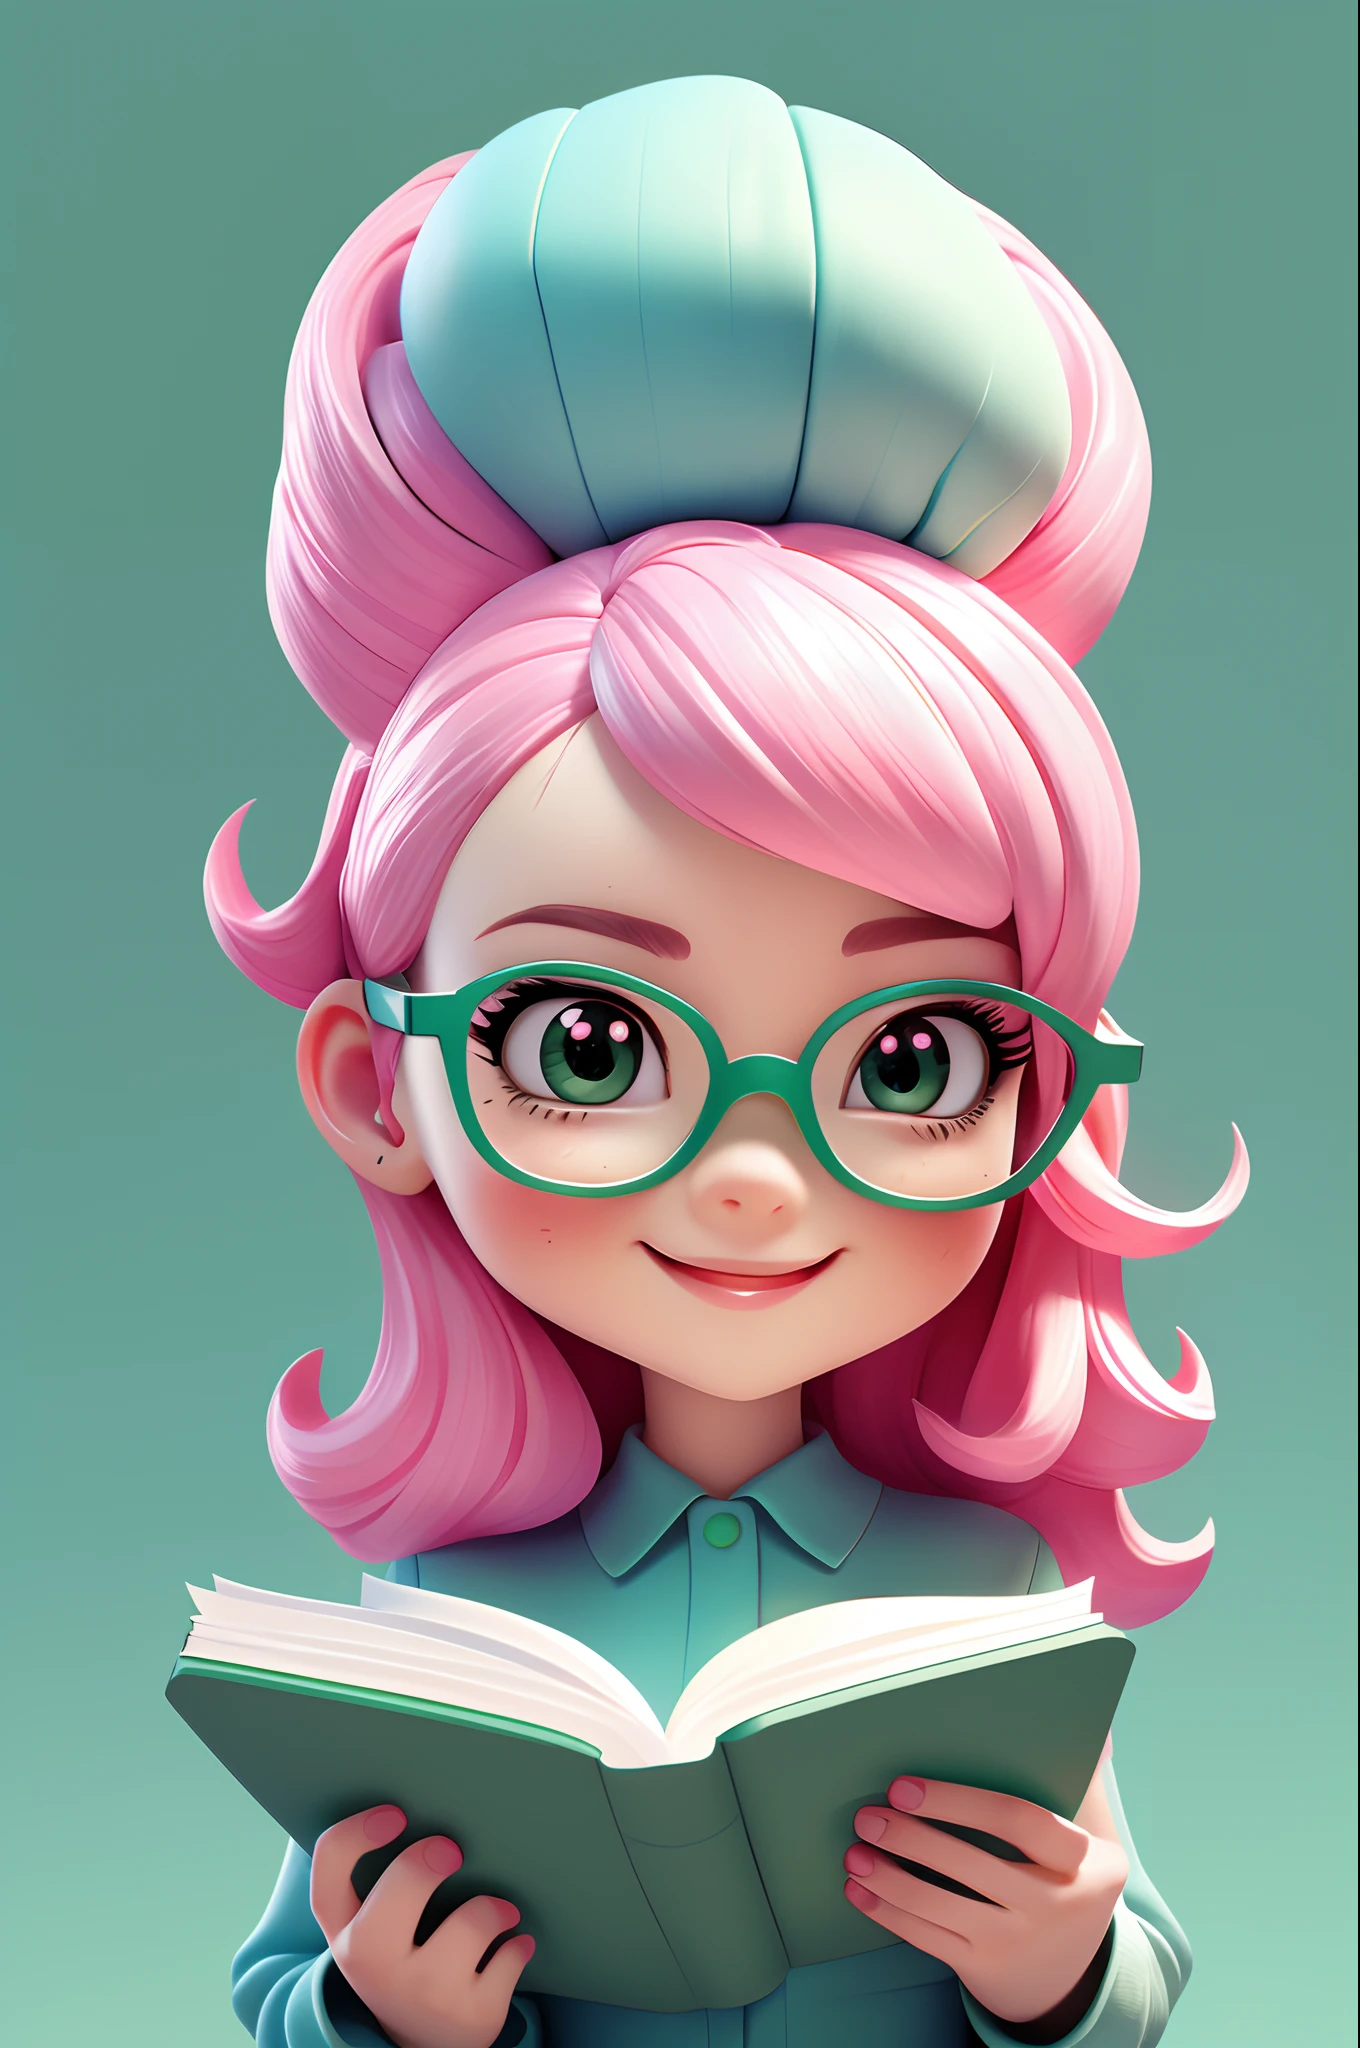 赤壁风格, 粉红色头发, 青色套装, 可爱的, 微笑, 戴着眼镜看书的女孩, 杰作, 3dm 风格, 看看观众, (((简单的背景))), (((绿色纯色背景)))